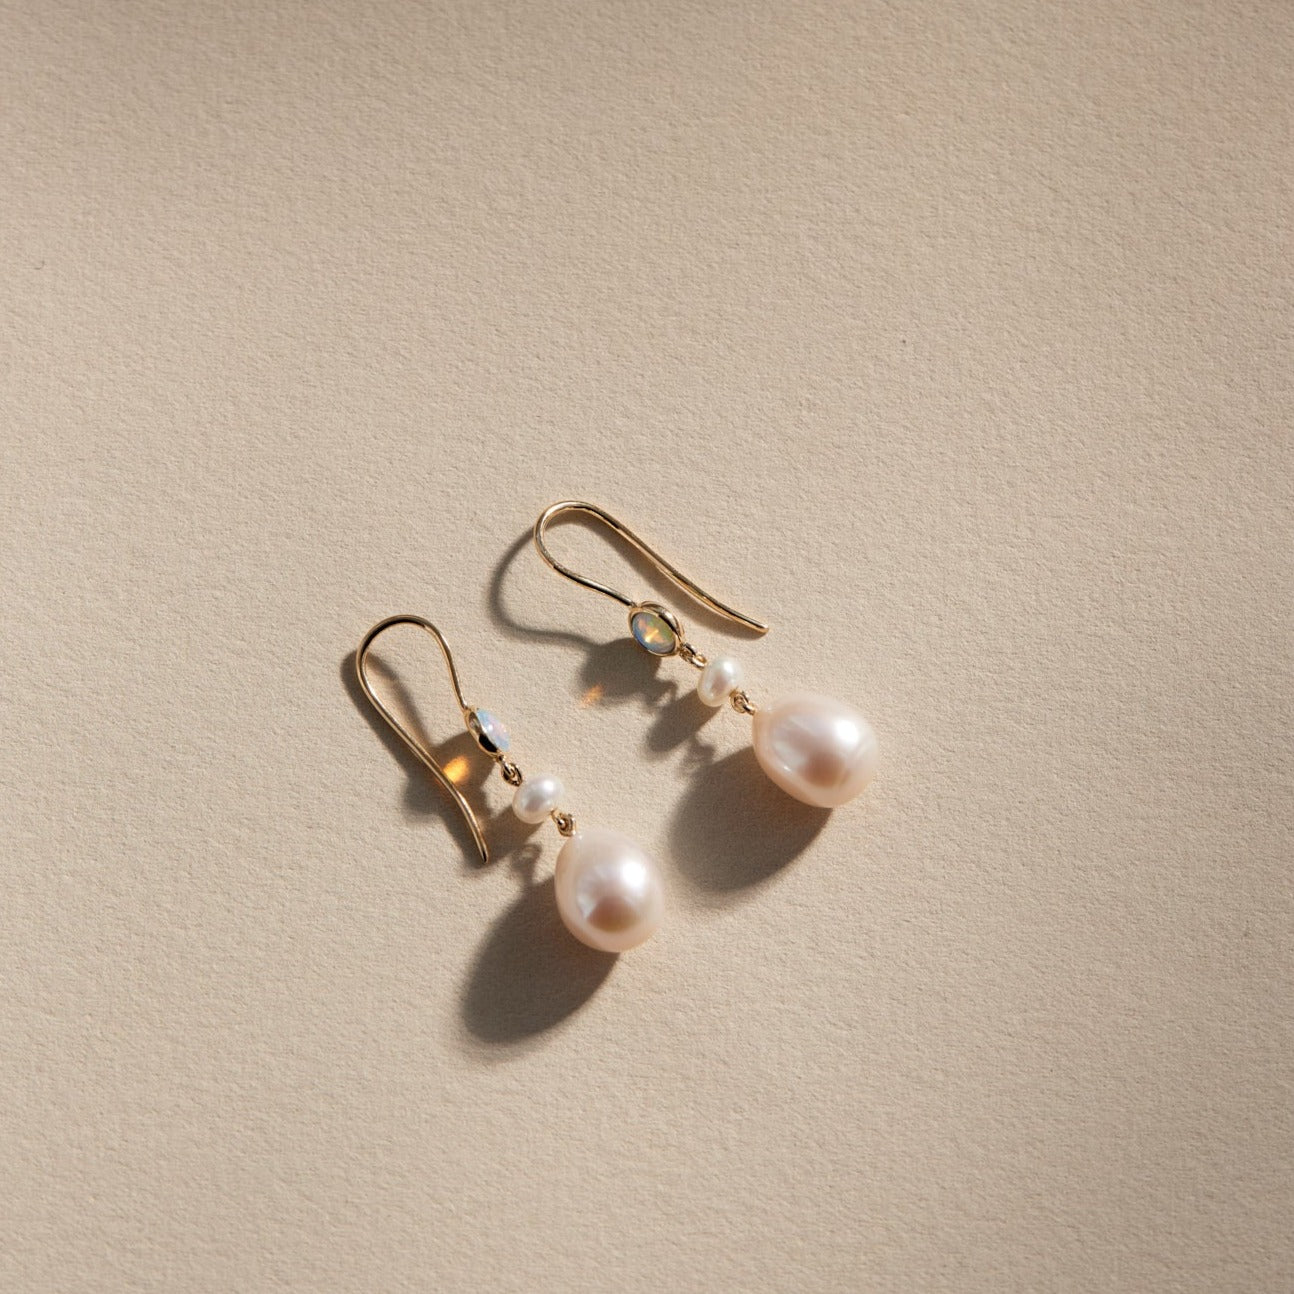 Venus pearl and opal earrings